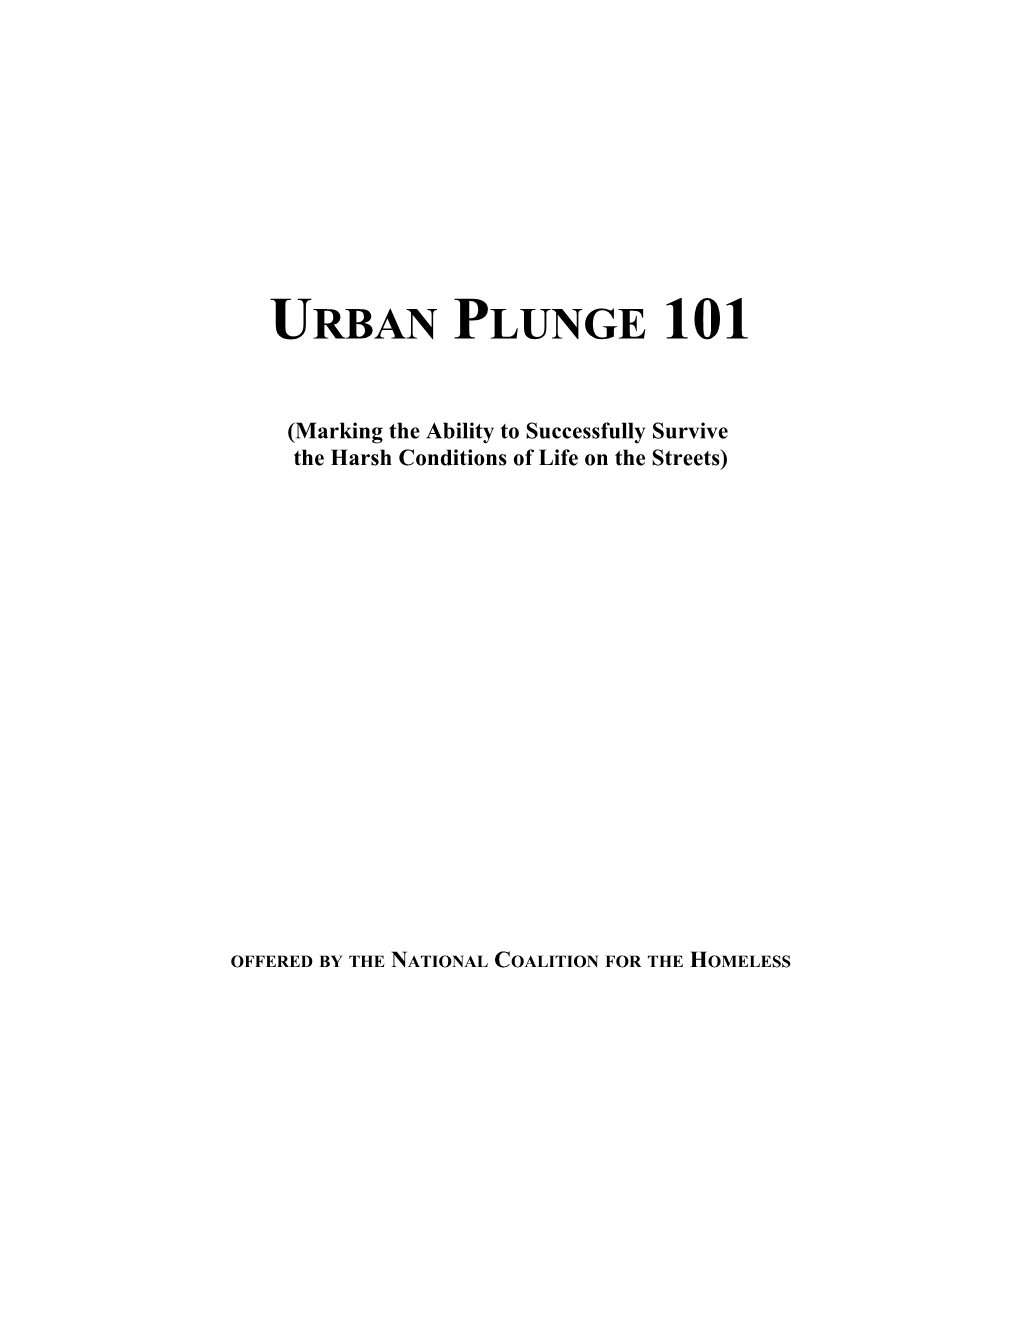 Urban Plunge Checklist